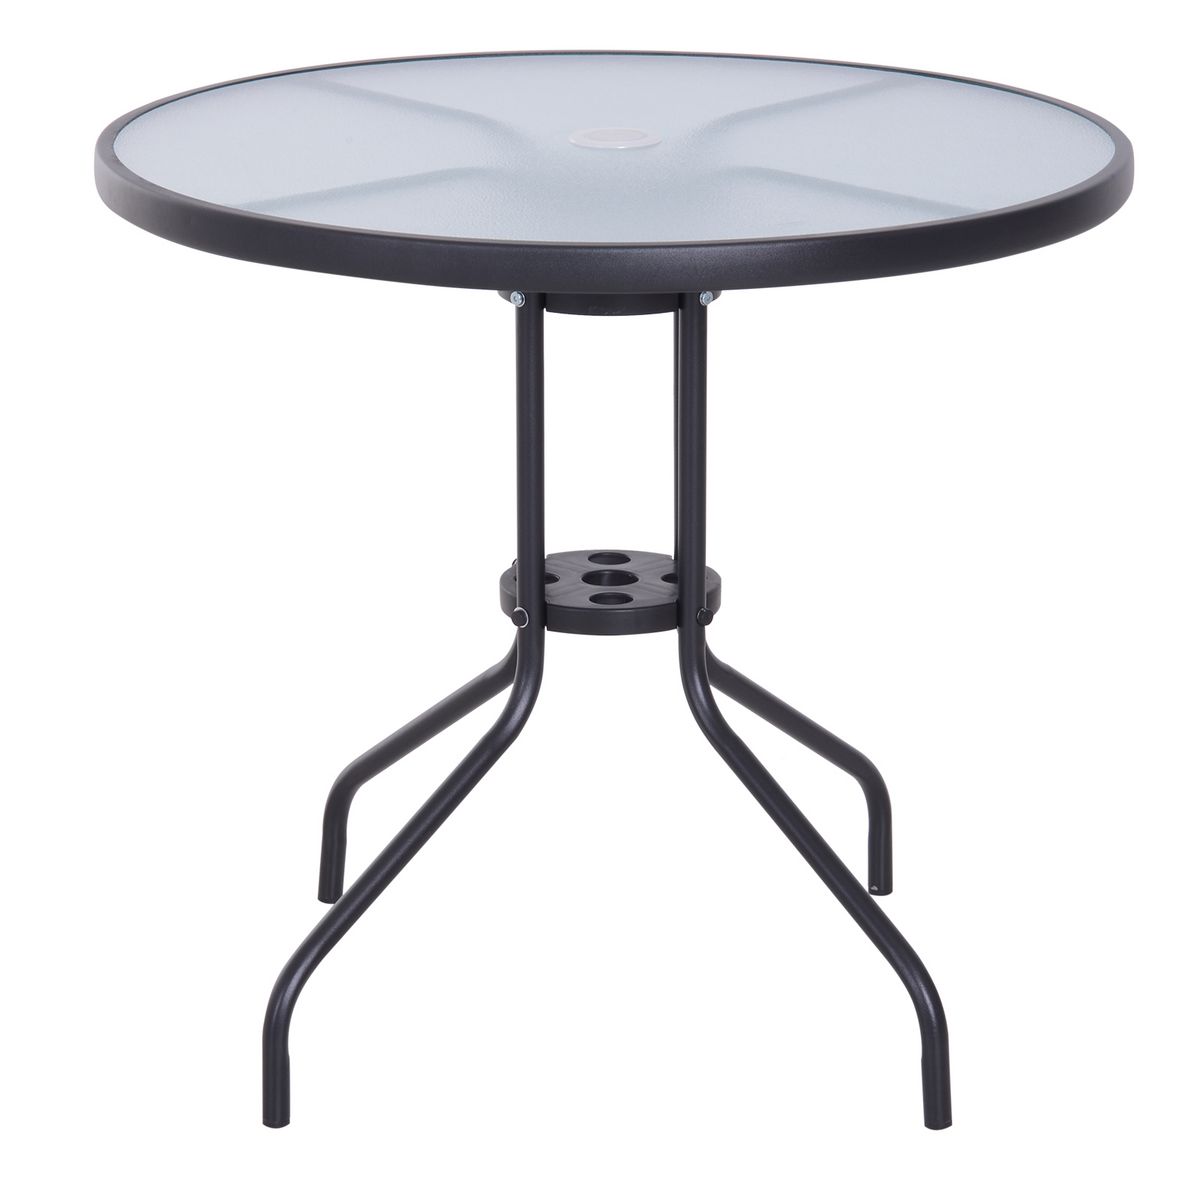 OUTSUNNY Table ronde bistro de jardin dim. Ø 80 x 72H cm espace installation parasol acier époxy noir plateau verre trempé